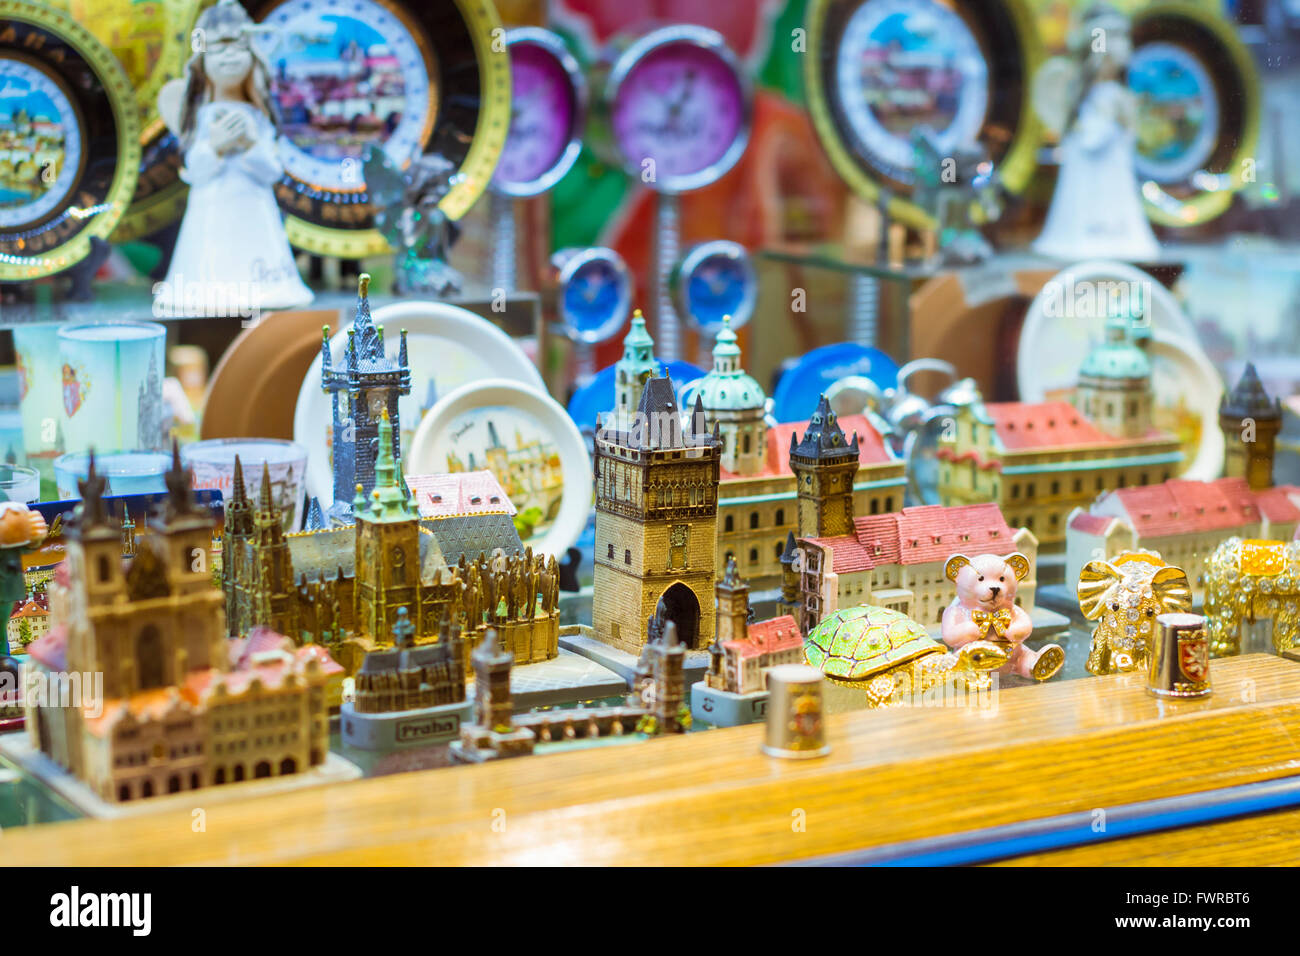 Praga, Repubblica Ceca - 25 agosto 2015: Negozio di souvenir e di elementi decorativi palazzi e castelli sullo scaffale del negozio di articoli da regalo, Praga Foto Stock